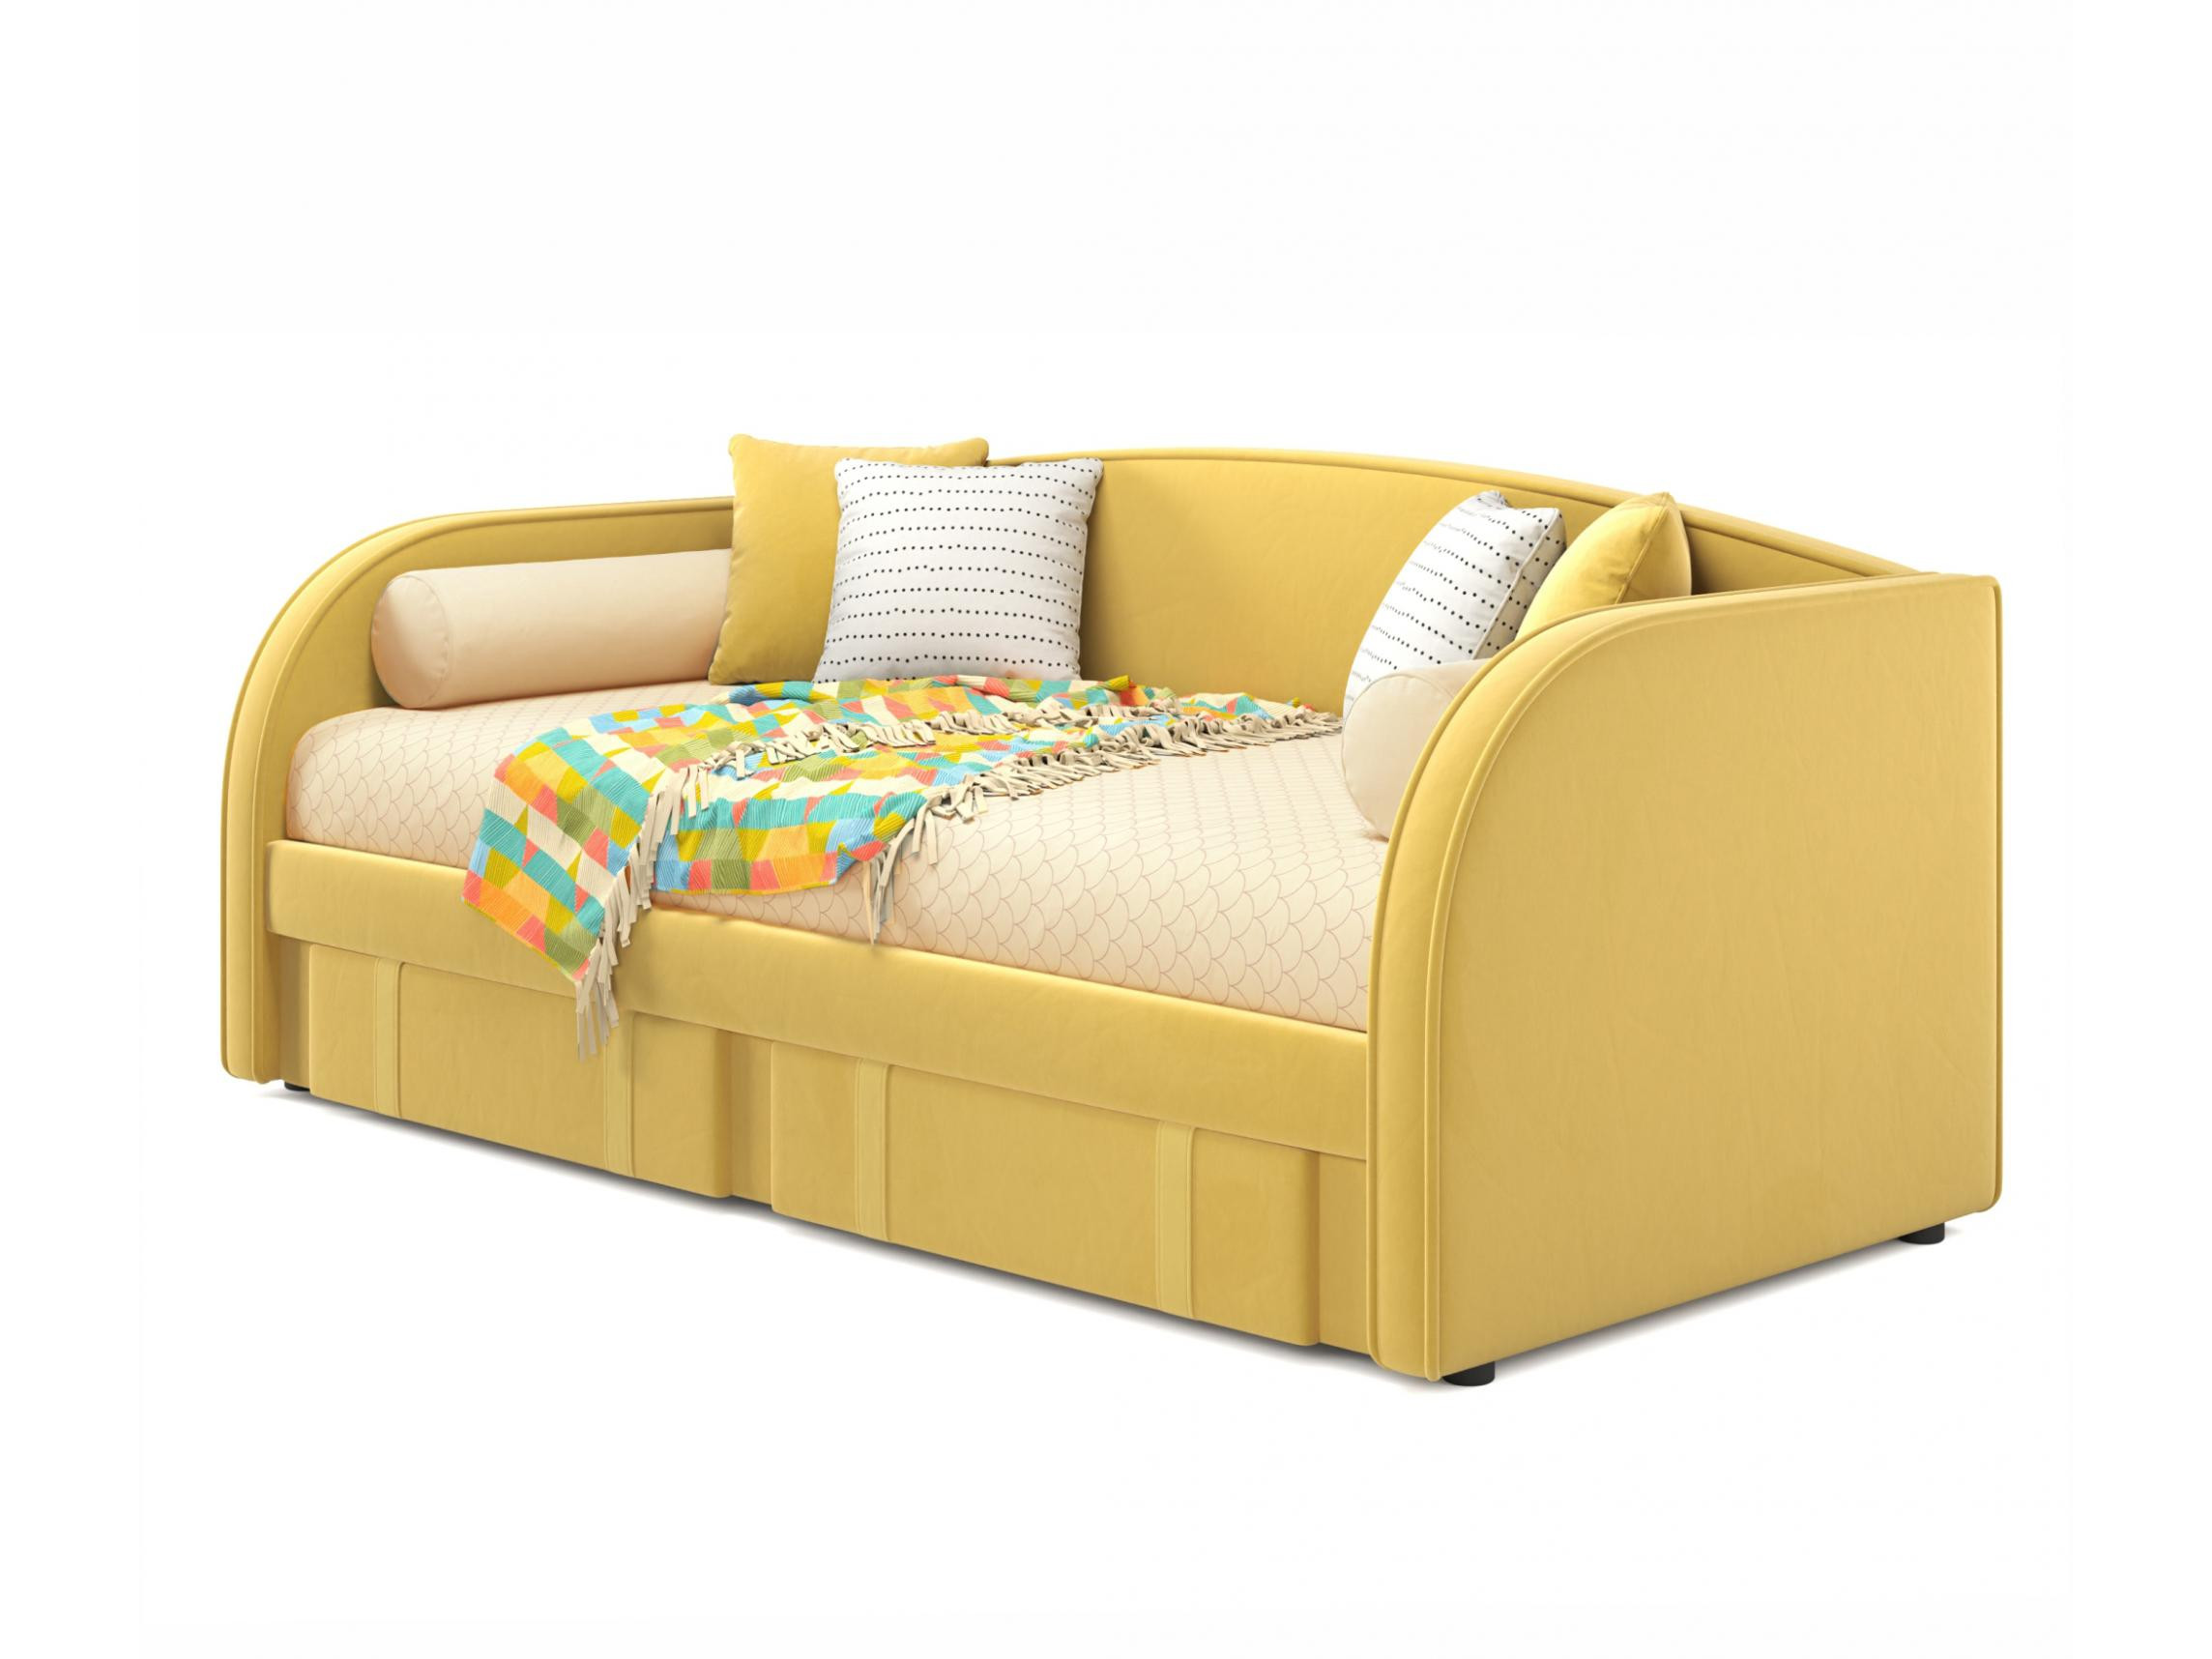 Мягкая кровать Elda 900 желтая с ортопедическим основанием и матрасом ГОСТ желтый, Желтый, Велюр, ДСП мягкая кровать elda 900 желтая с ортопедическим основанием и матрасом гост желтый желтый велюр дсп